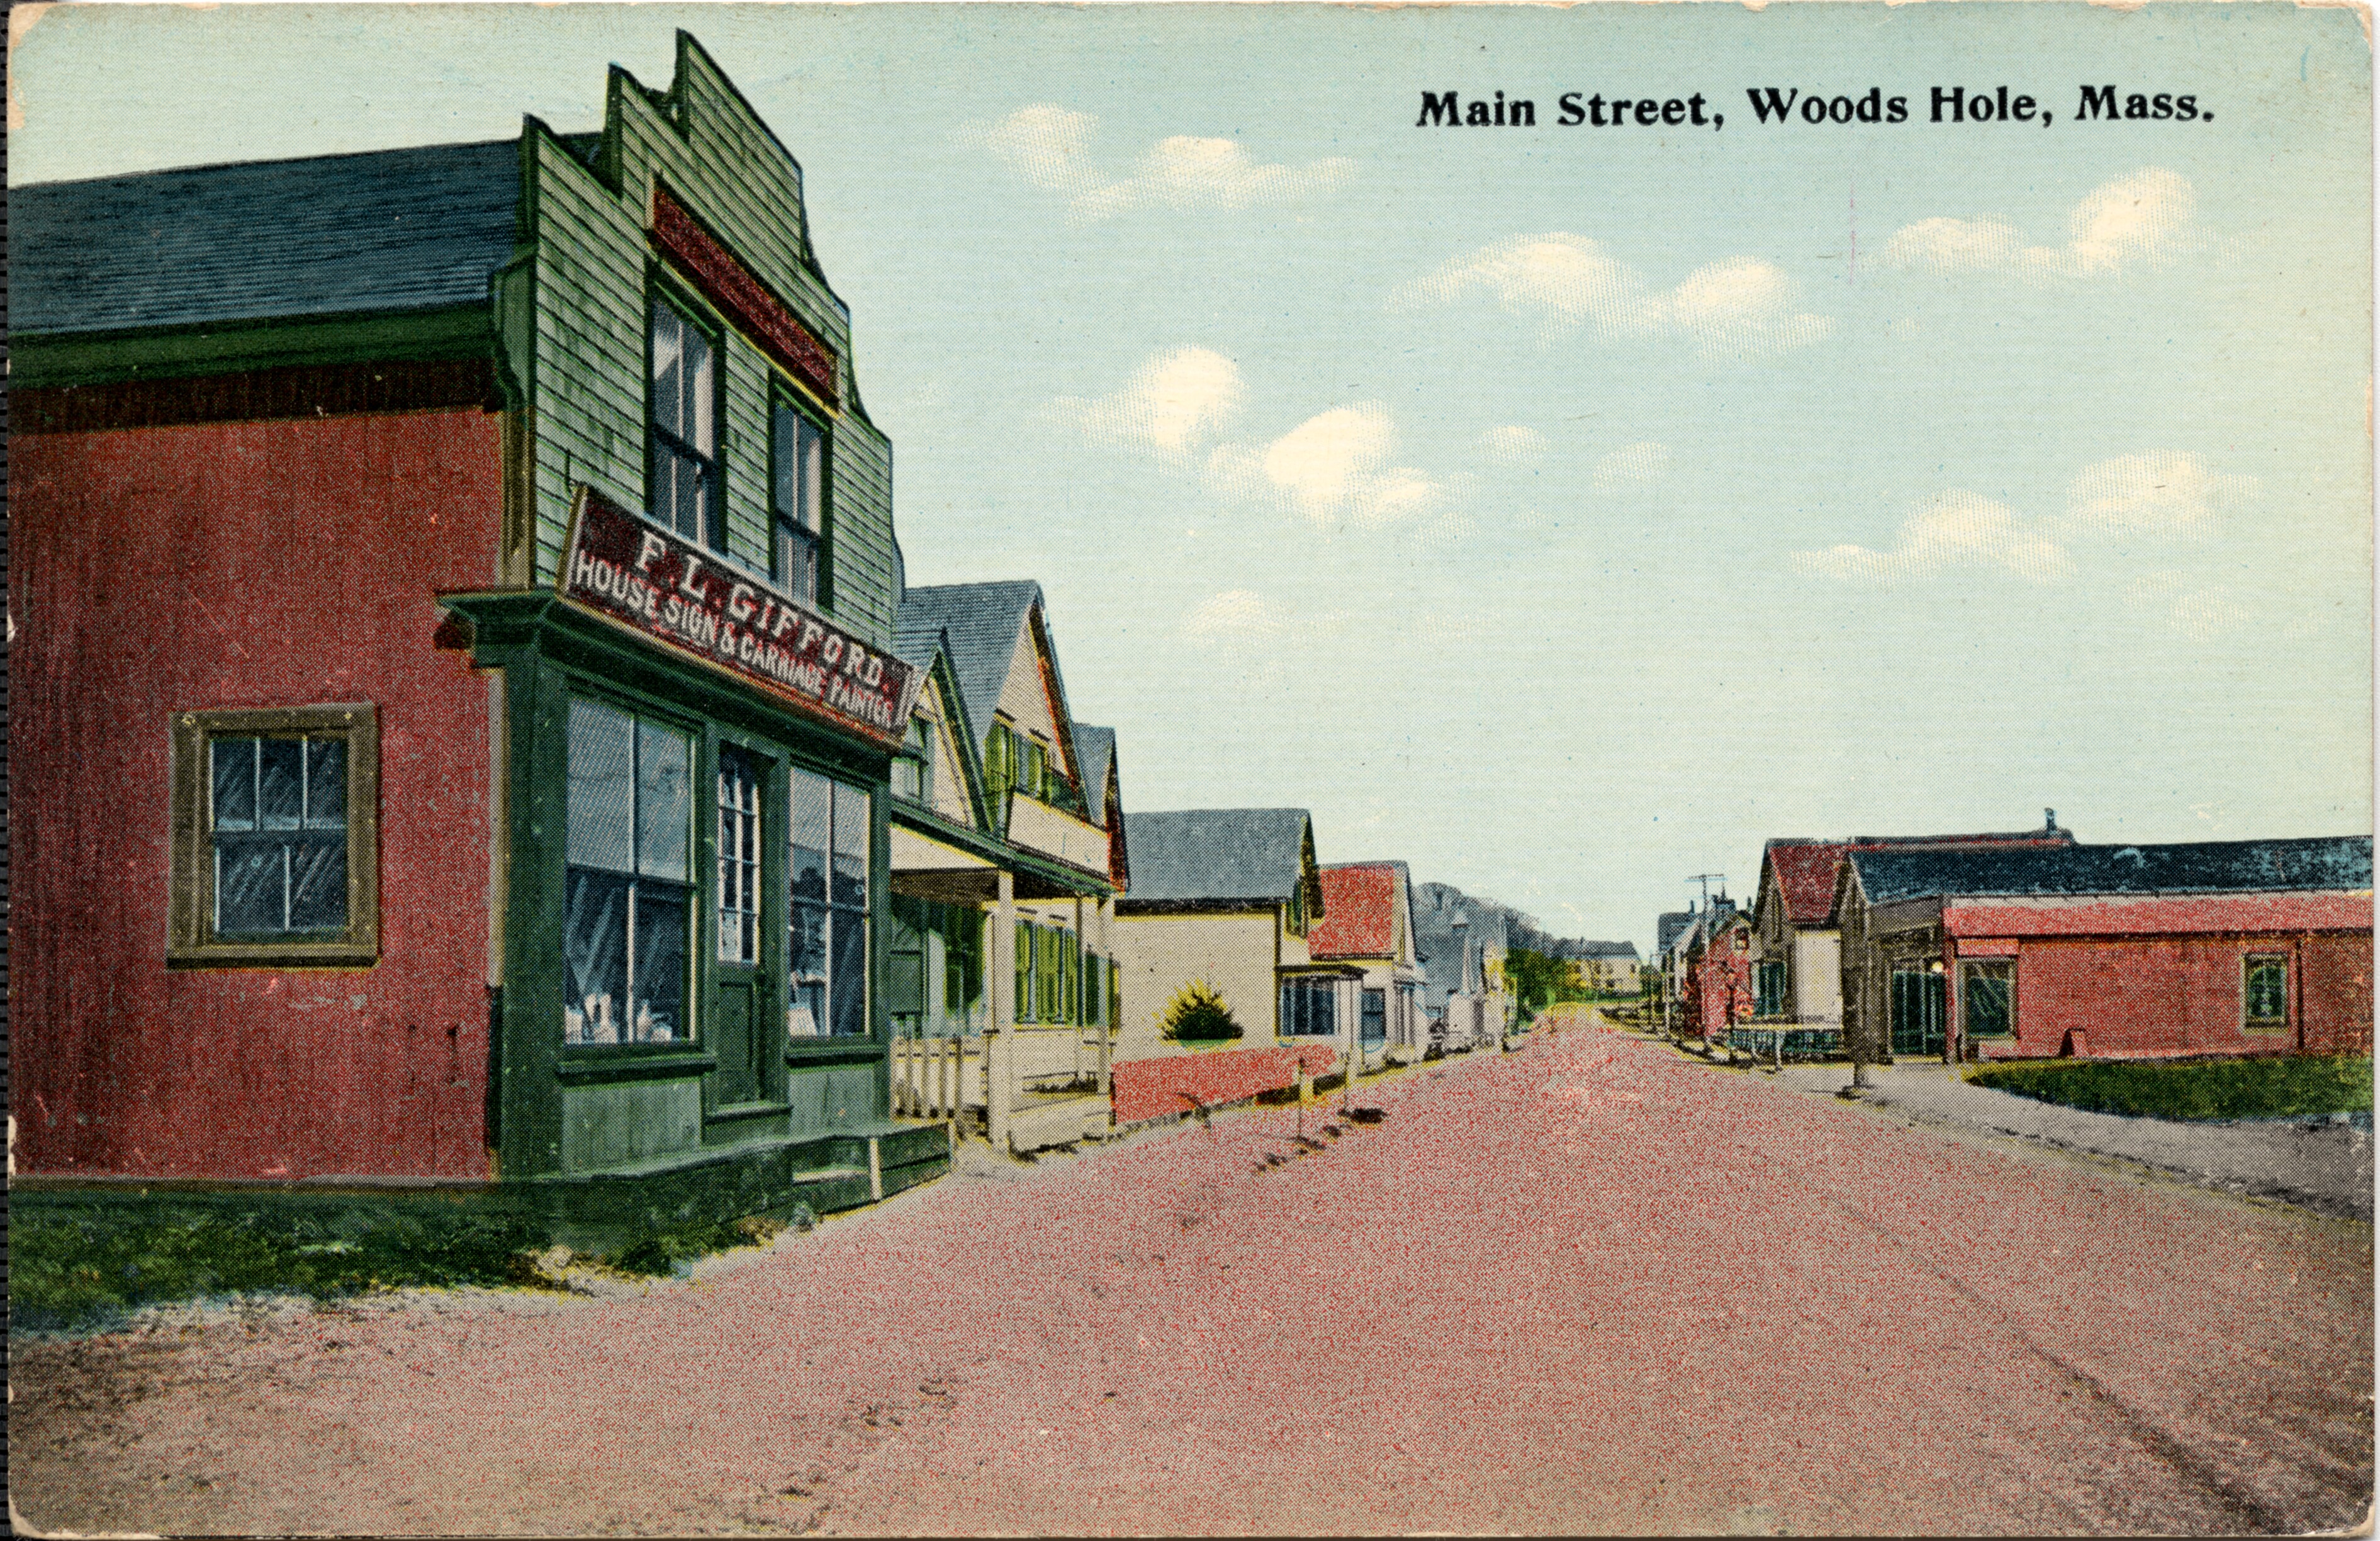 Main Street, Woods Hole